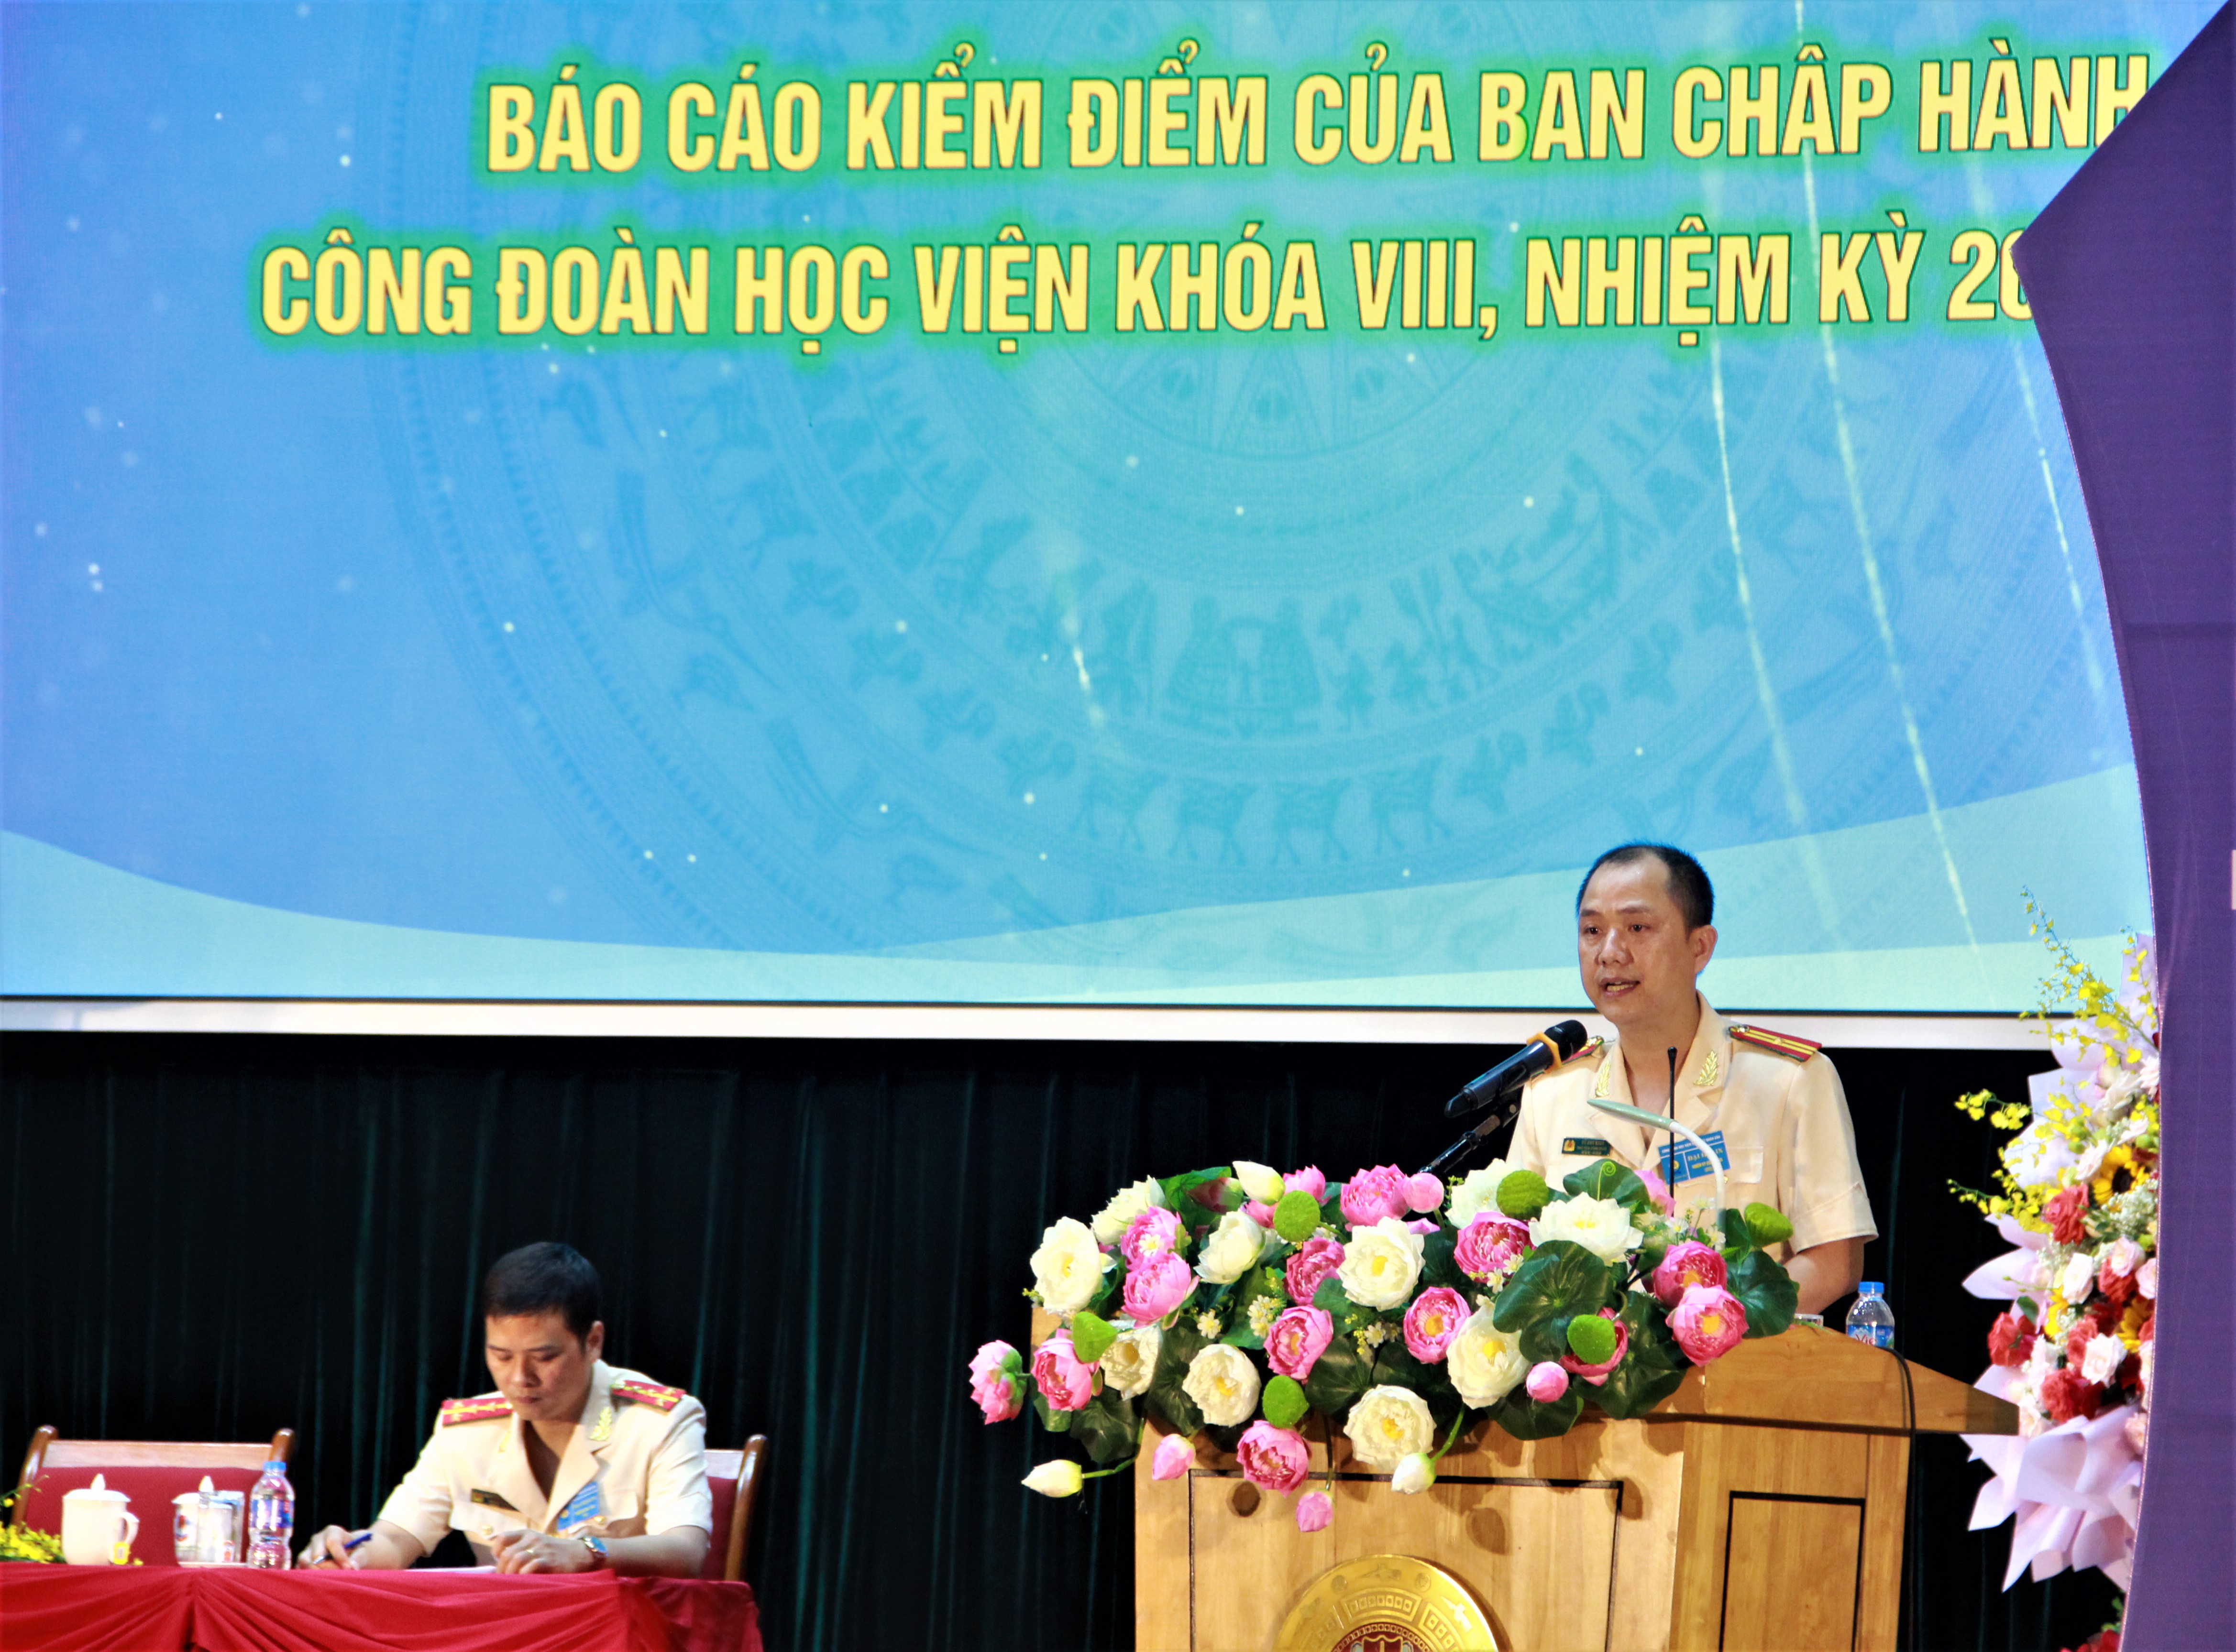 Thiếu tá Vũ Anh Khuê, Chủ tịch Công đoàn Học viện CSND trình bày báo cáo kiểm điểm của Ban chấp hành Công đoàn Học viện